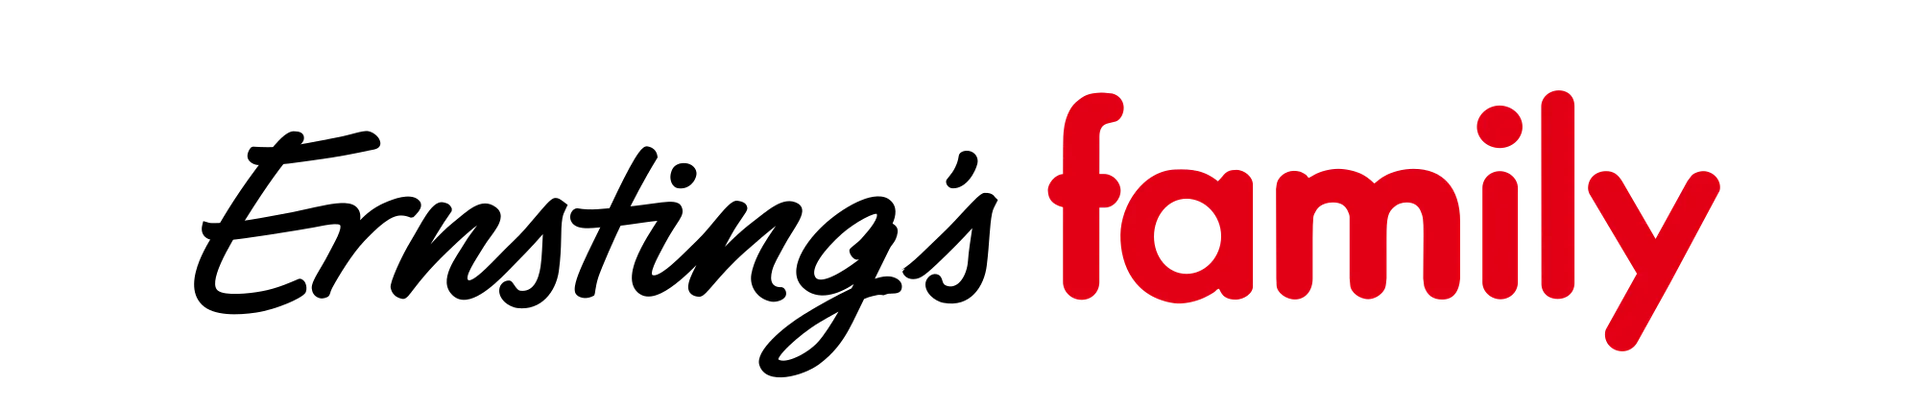 ERNSTING'S FAMILY logo die aktuell Prospekt